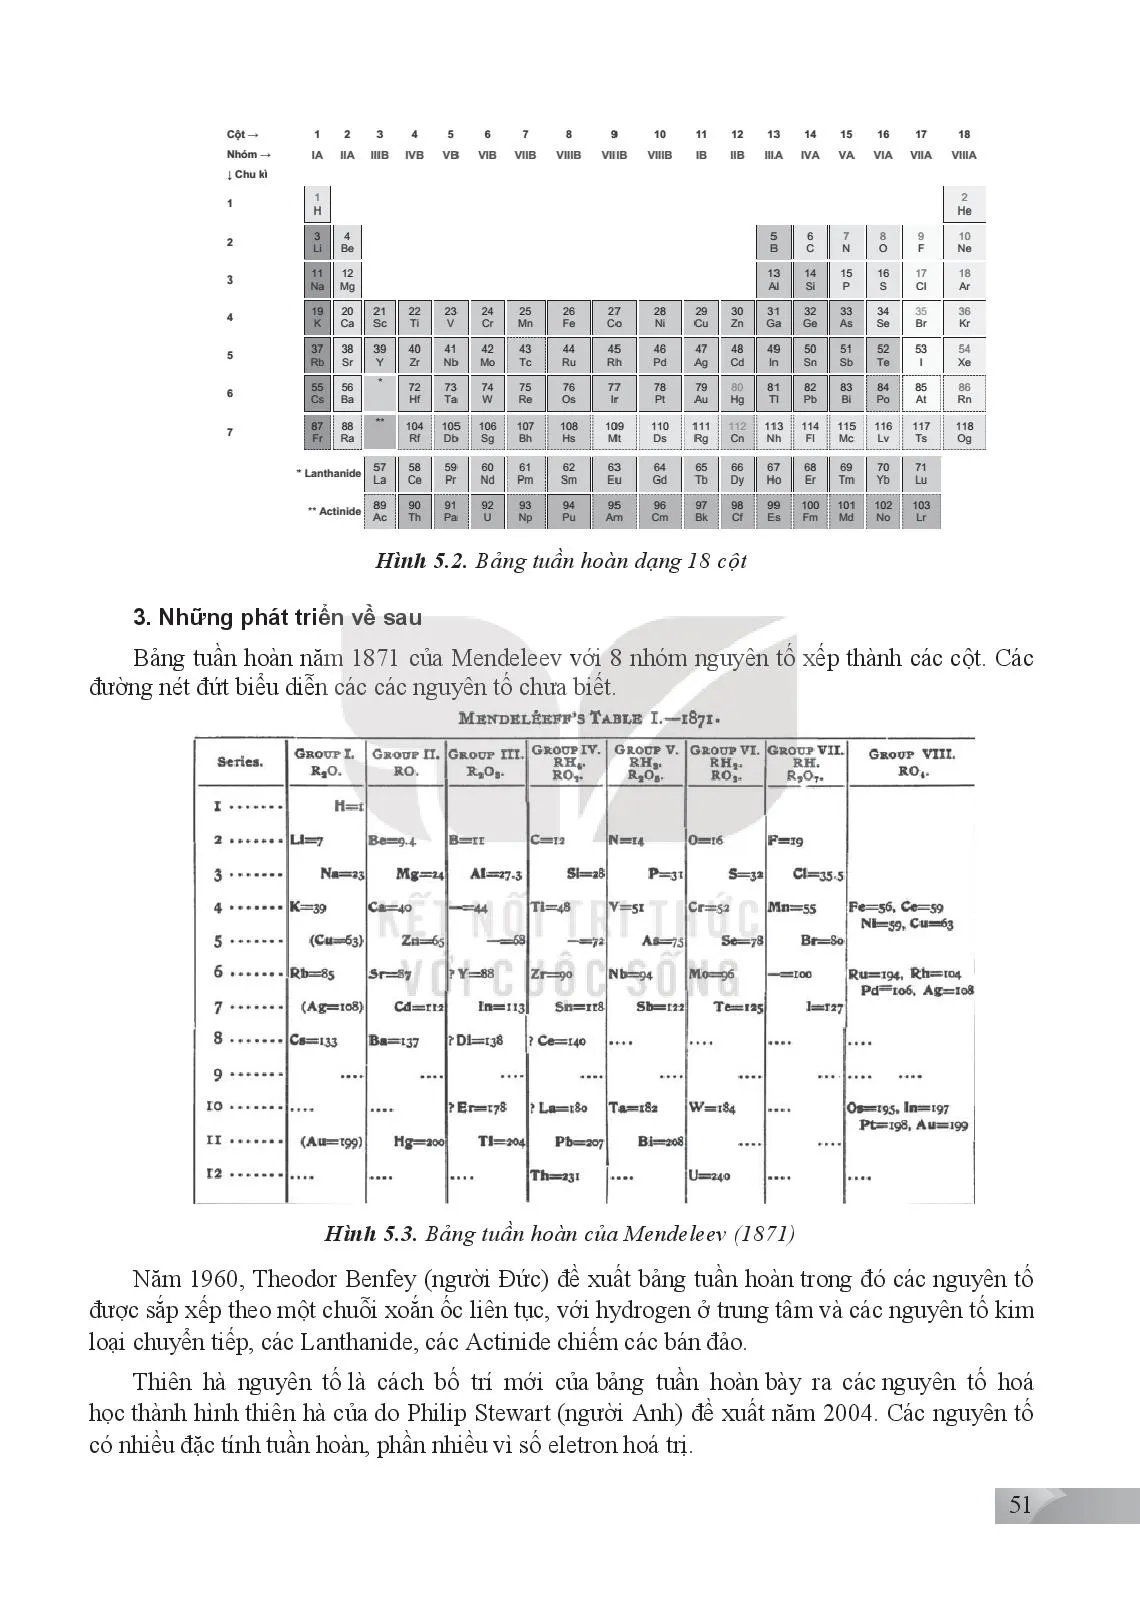 Bài 5. Cấu tạo của bảng tuần hoàn các nguyên tố hoá học